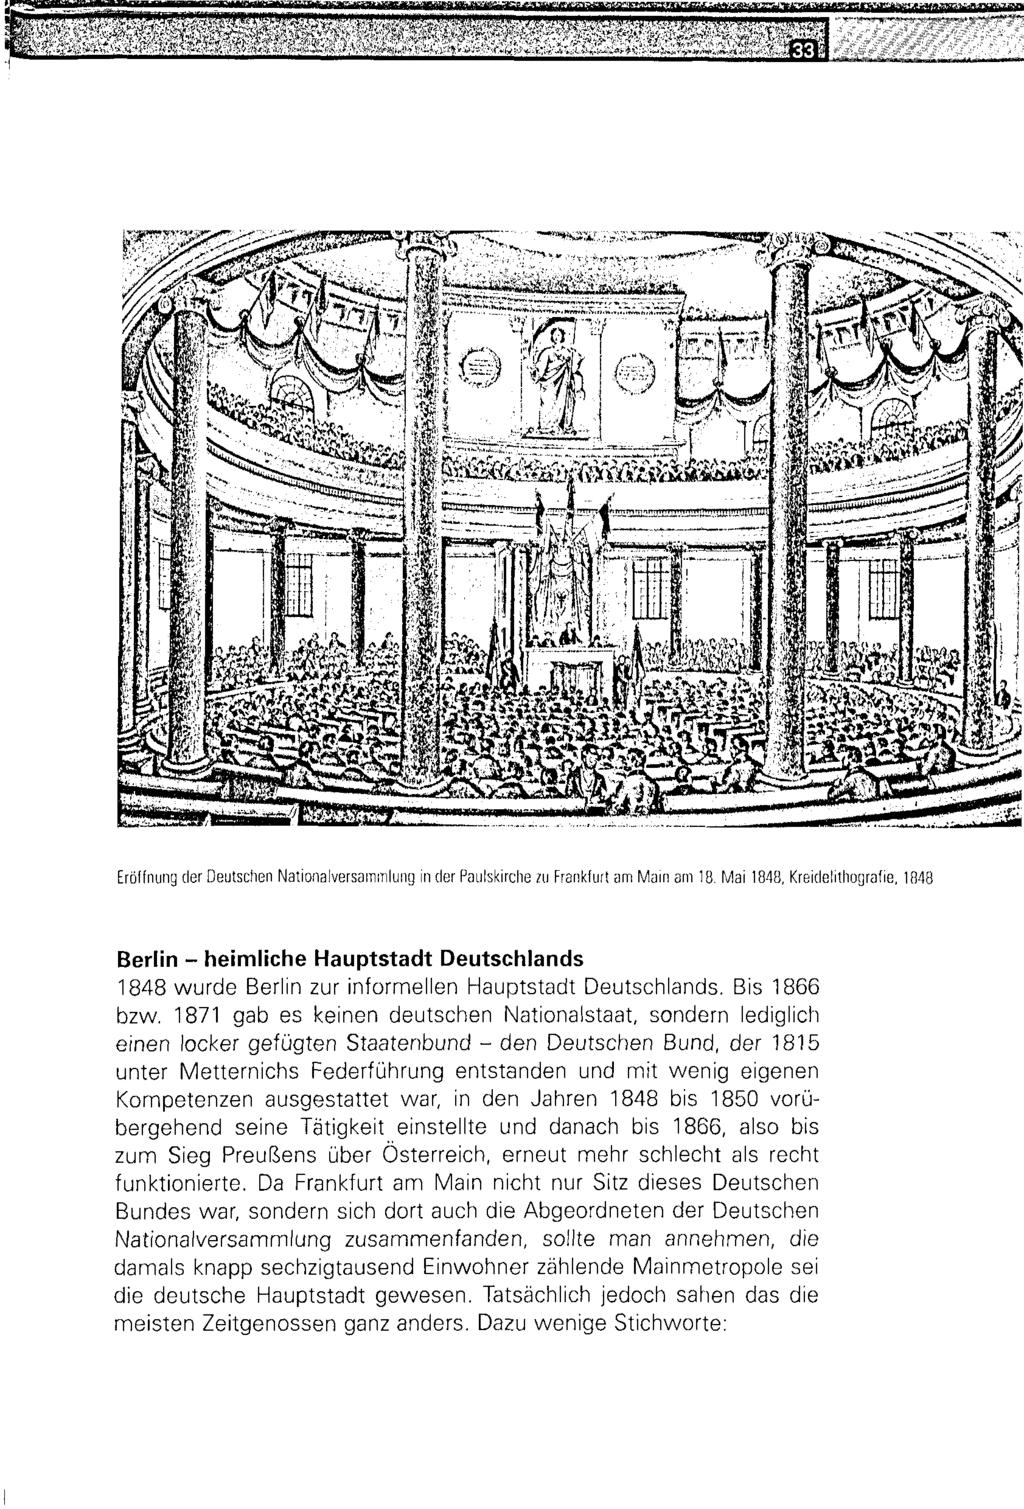 m : - ; http://dx.doi.org/10.14765/zzf.dok.1.883 Eröffnung der Deutschen Nationalversammlung in der Paulskirche *u Frankfurt am Main am 18. Mai 1848, Kreidelithografie.